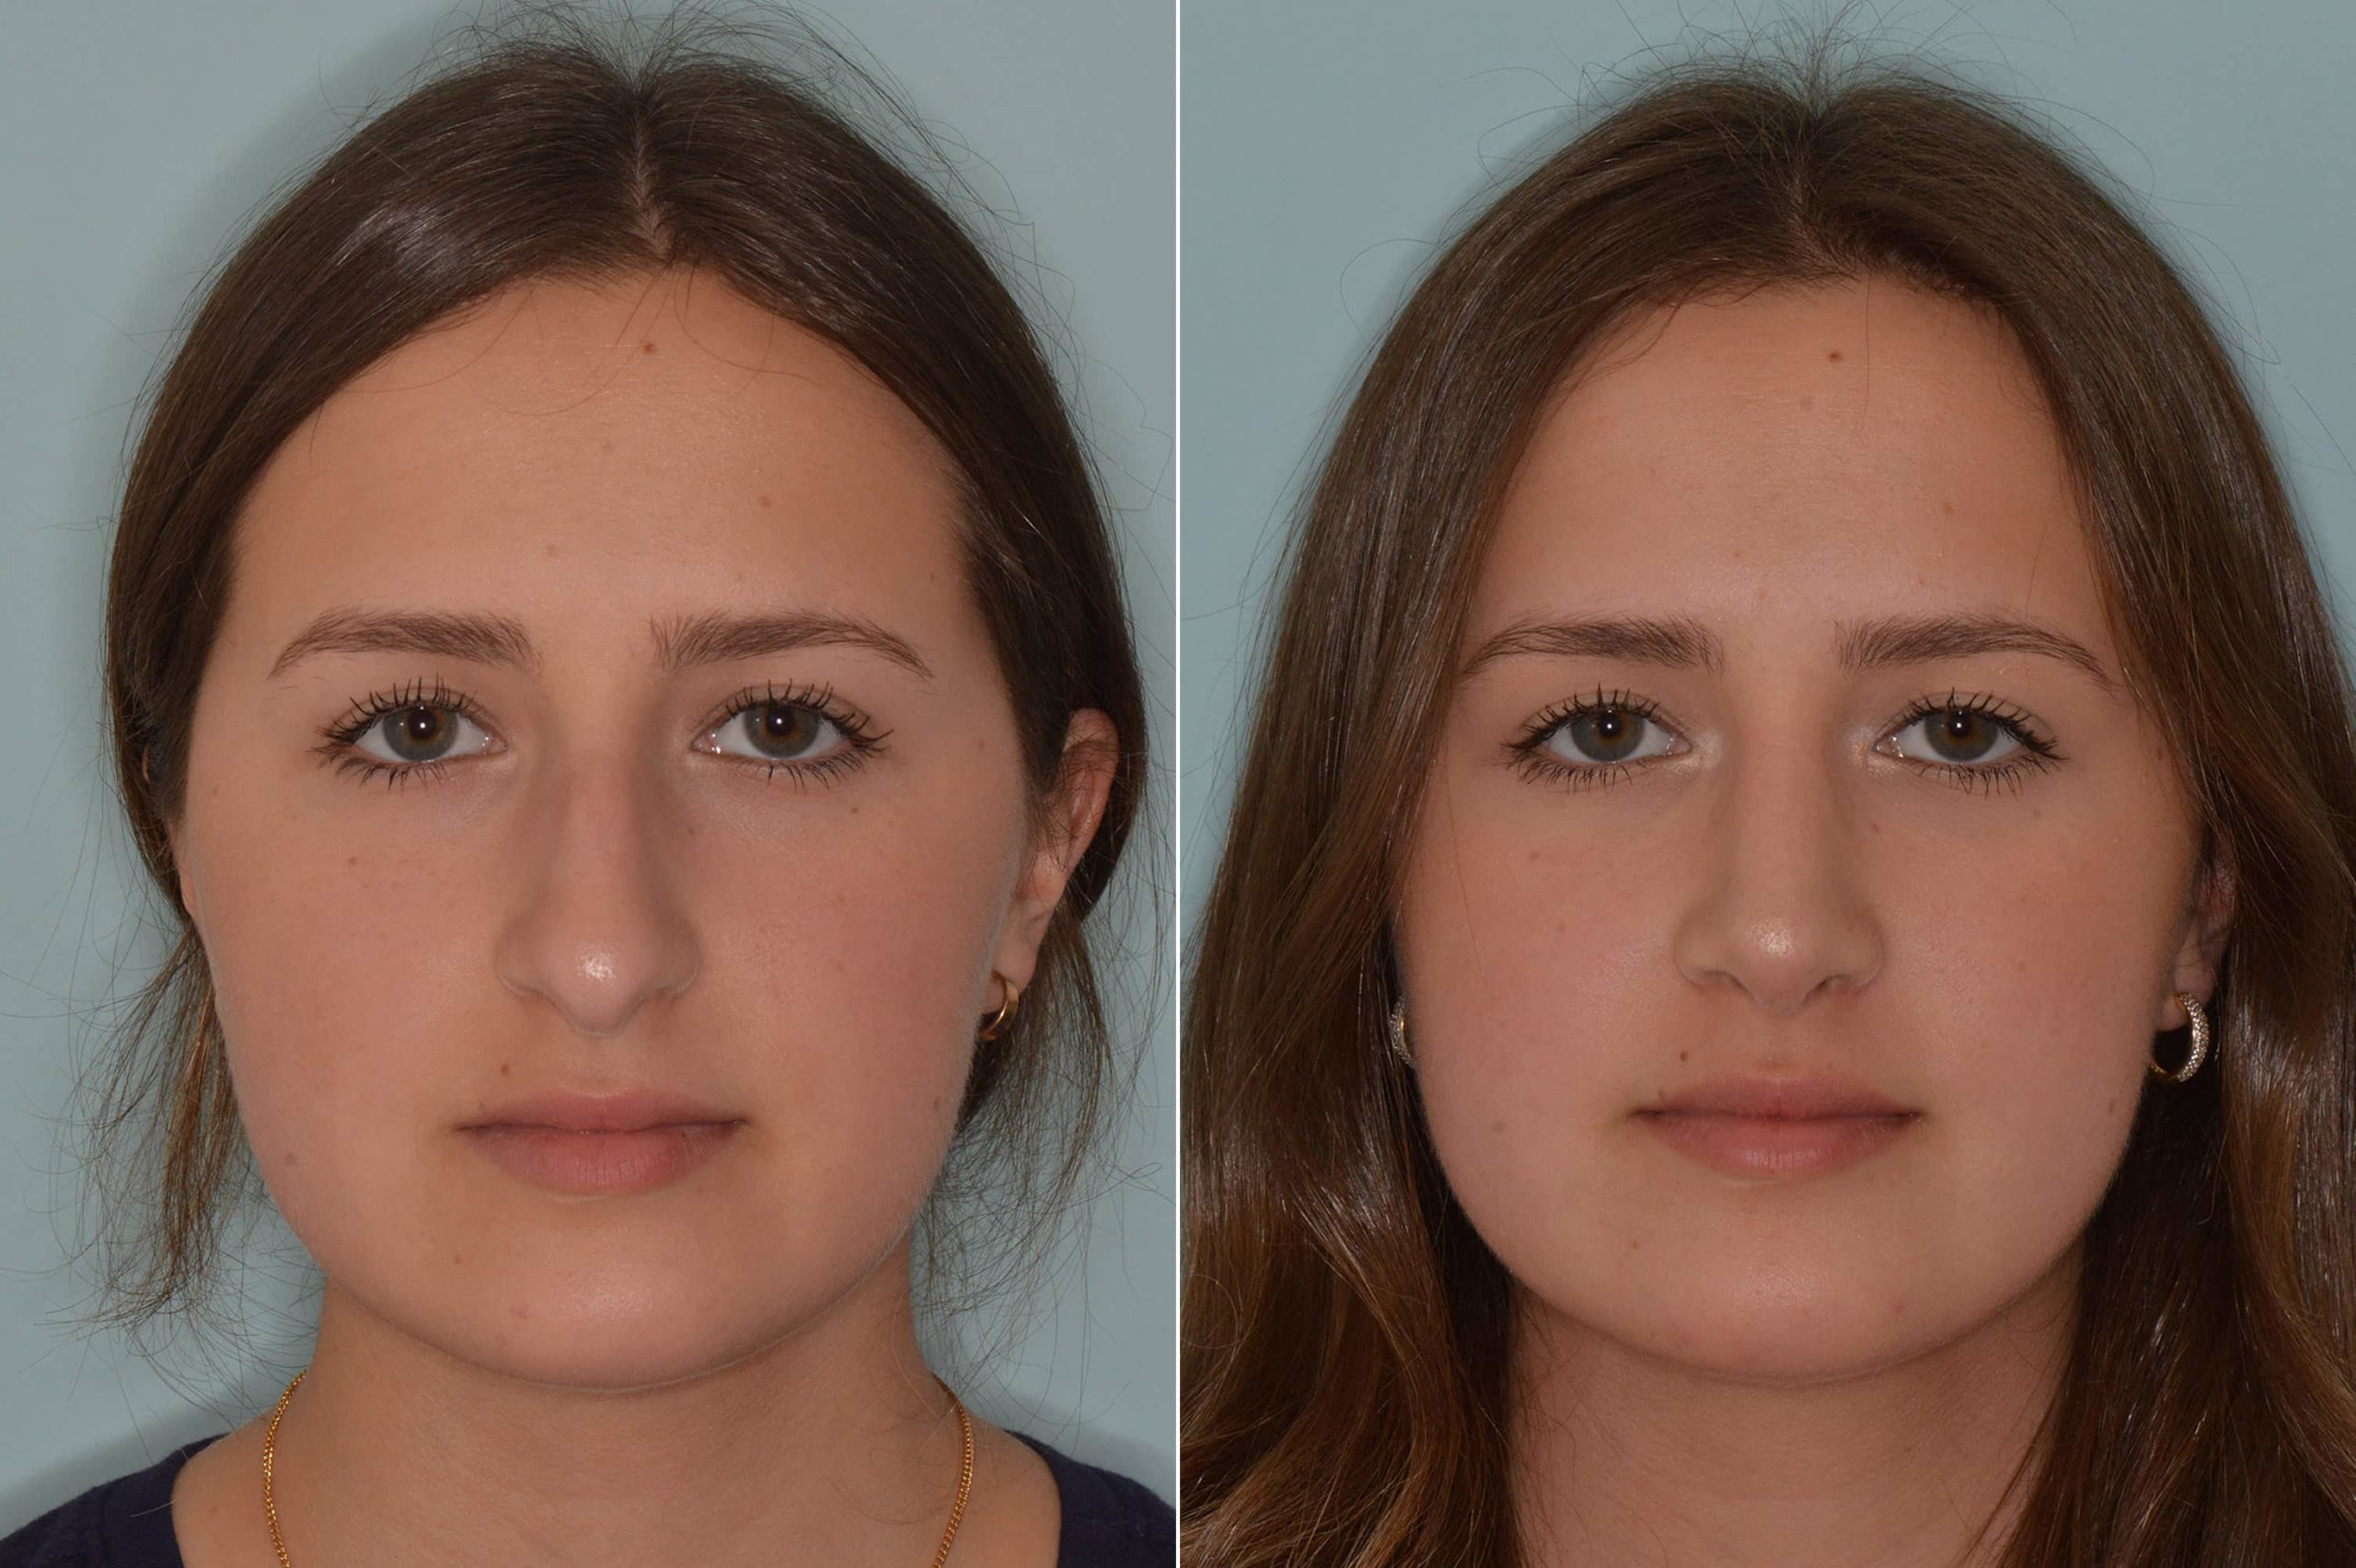 میزان تورم بینی قبل و بعد از عمل